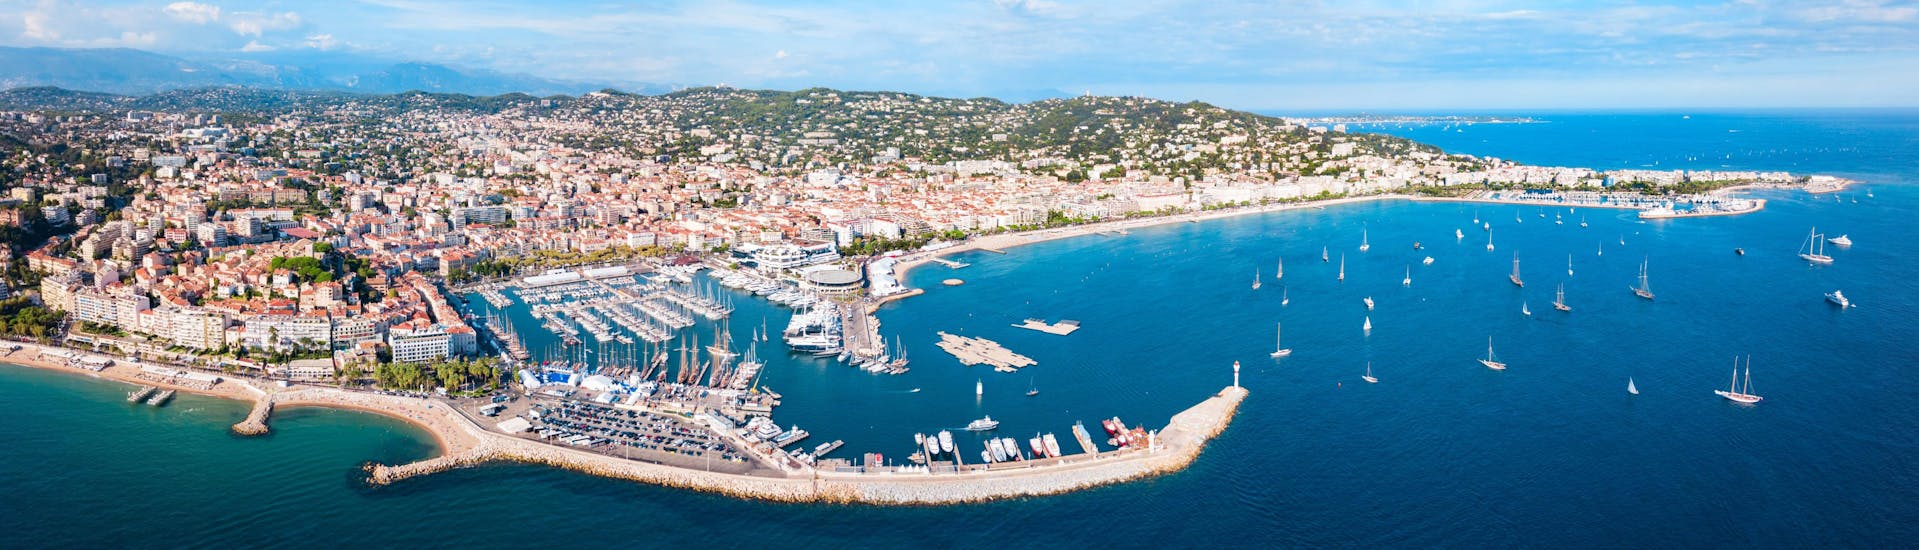 Foto von Cannes in Frankreich, wo Sie Bootsfahrten buchen können.